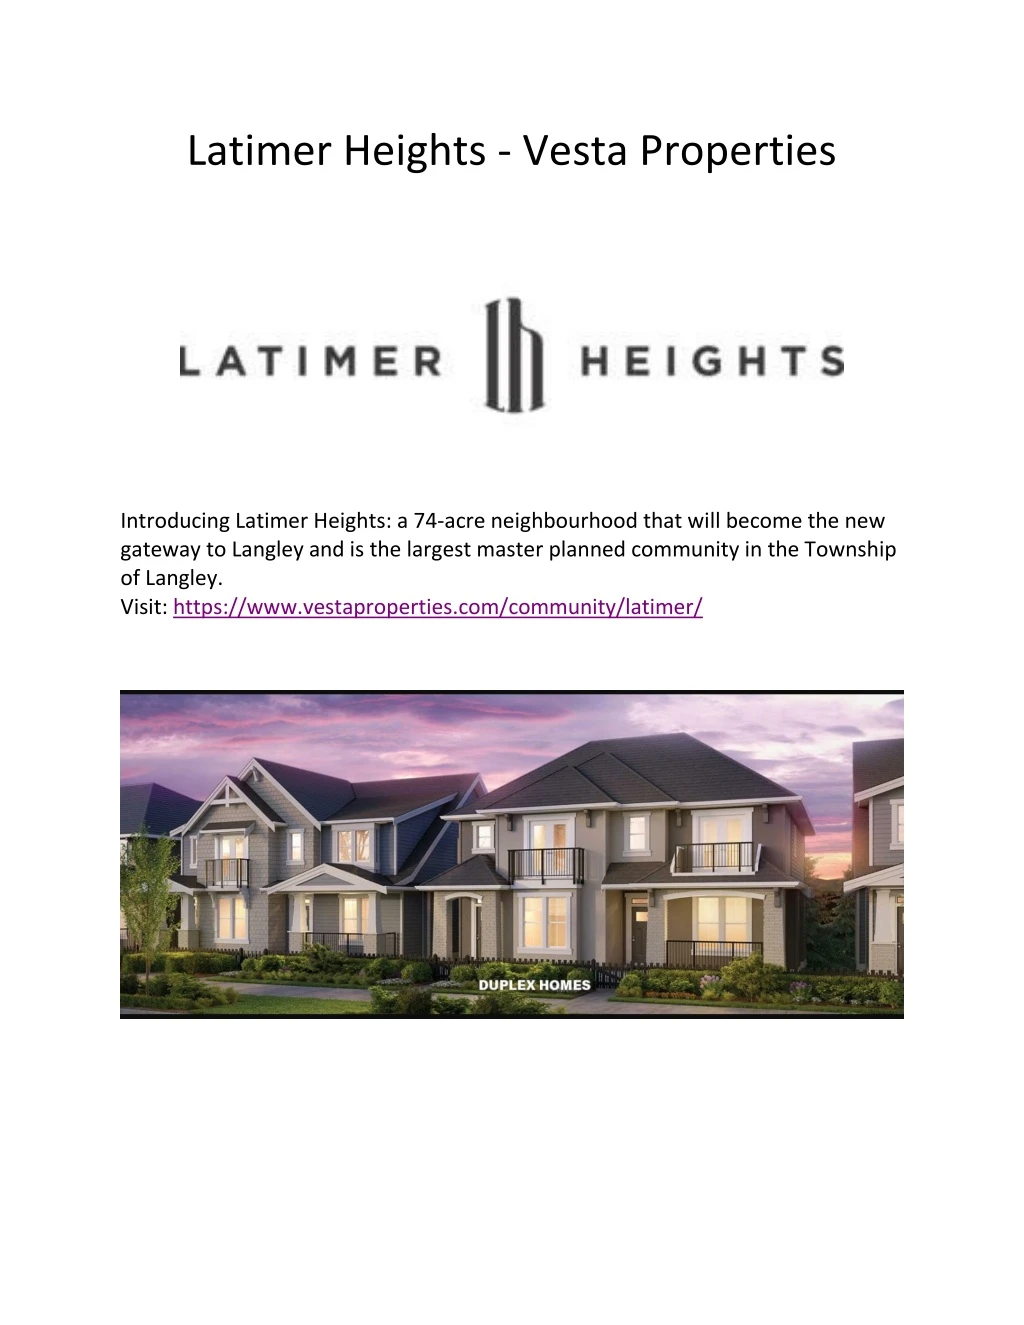 latimer heights vesta properties